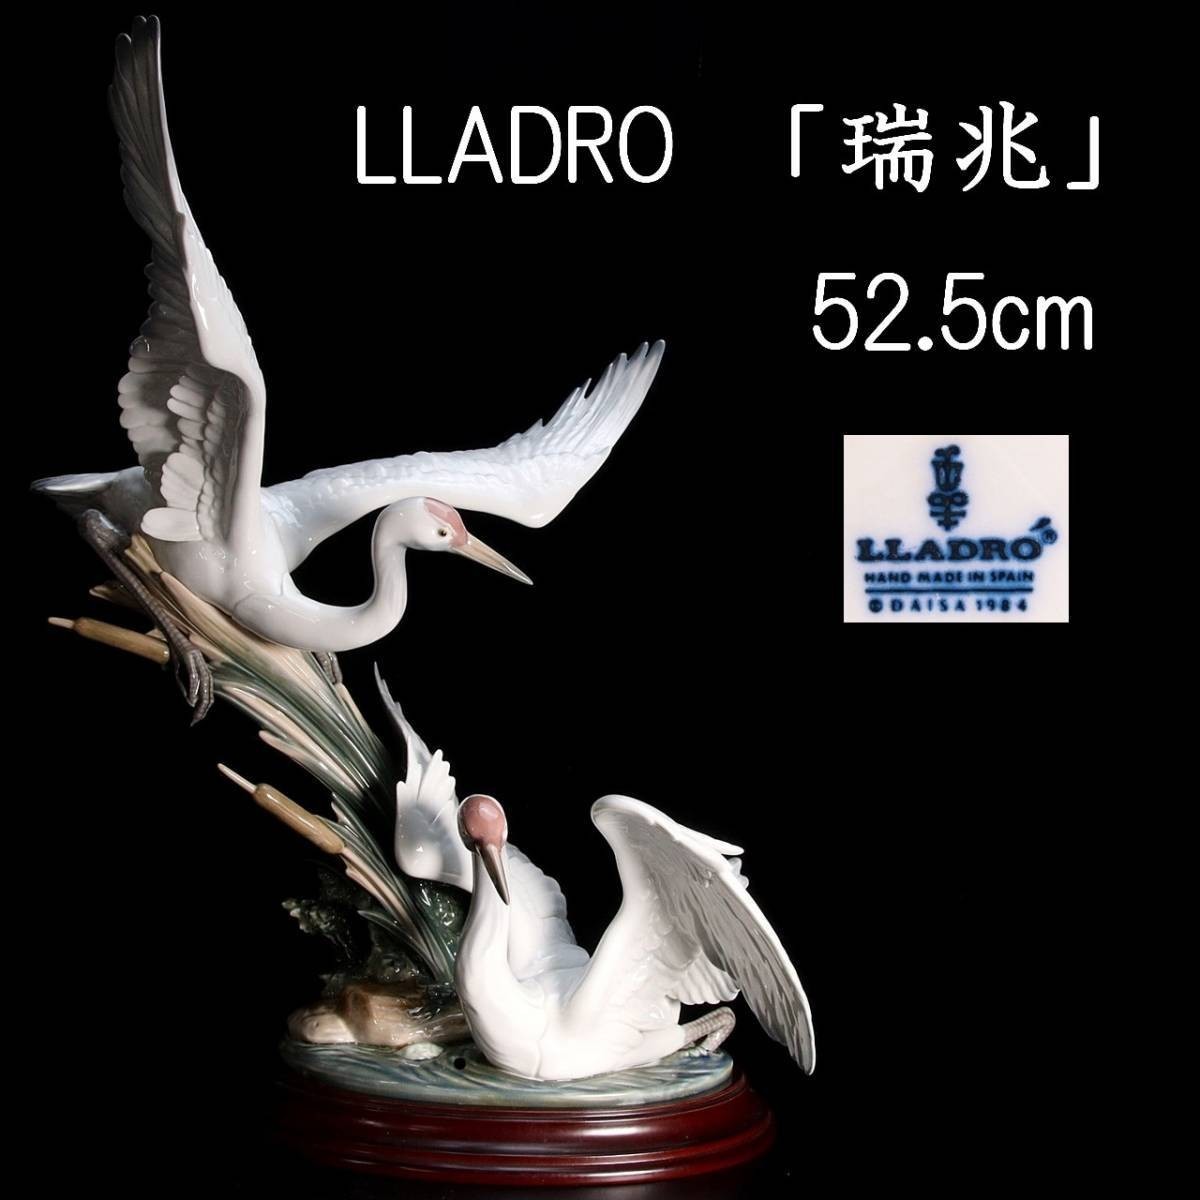 。◆錵◆3 百貨店購入 LLADRO リヤドロ 「瑞兆」 52.5cm ハイポーセリン 西洋美術 [Y200]VT/23.7/FM/(170)